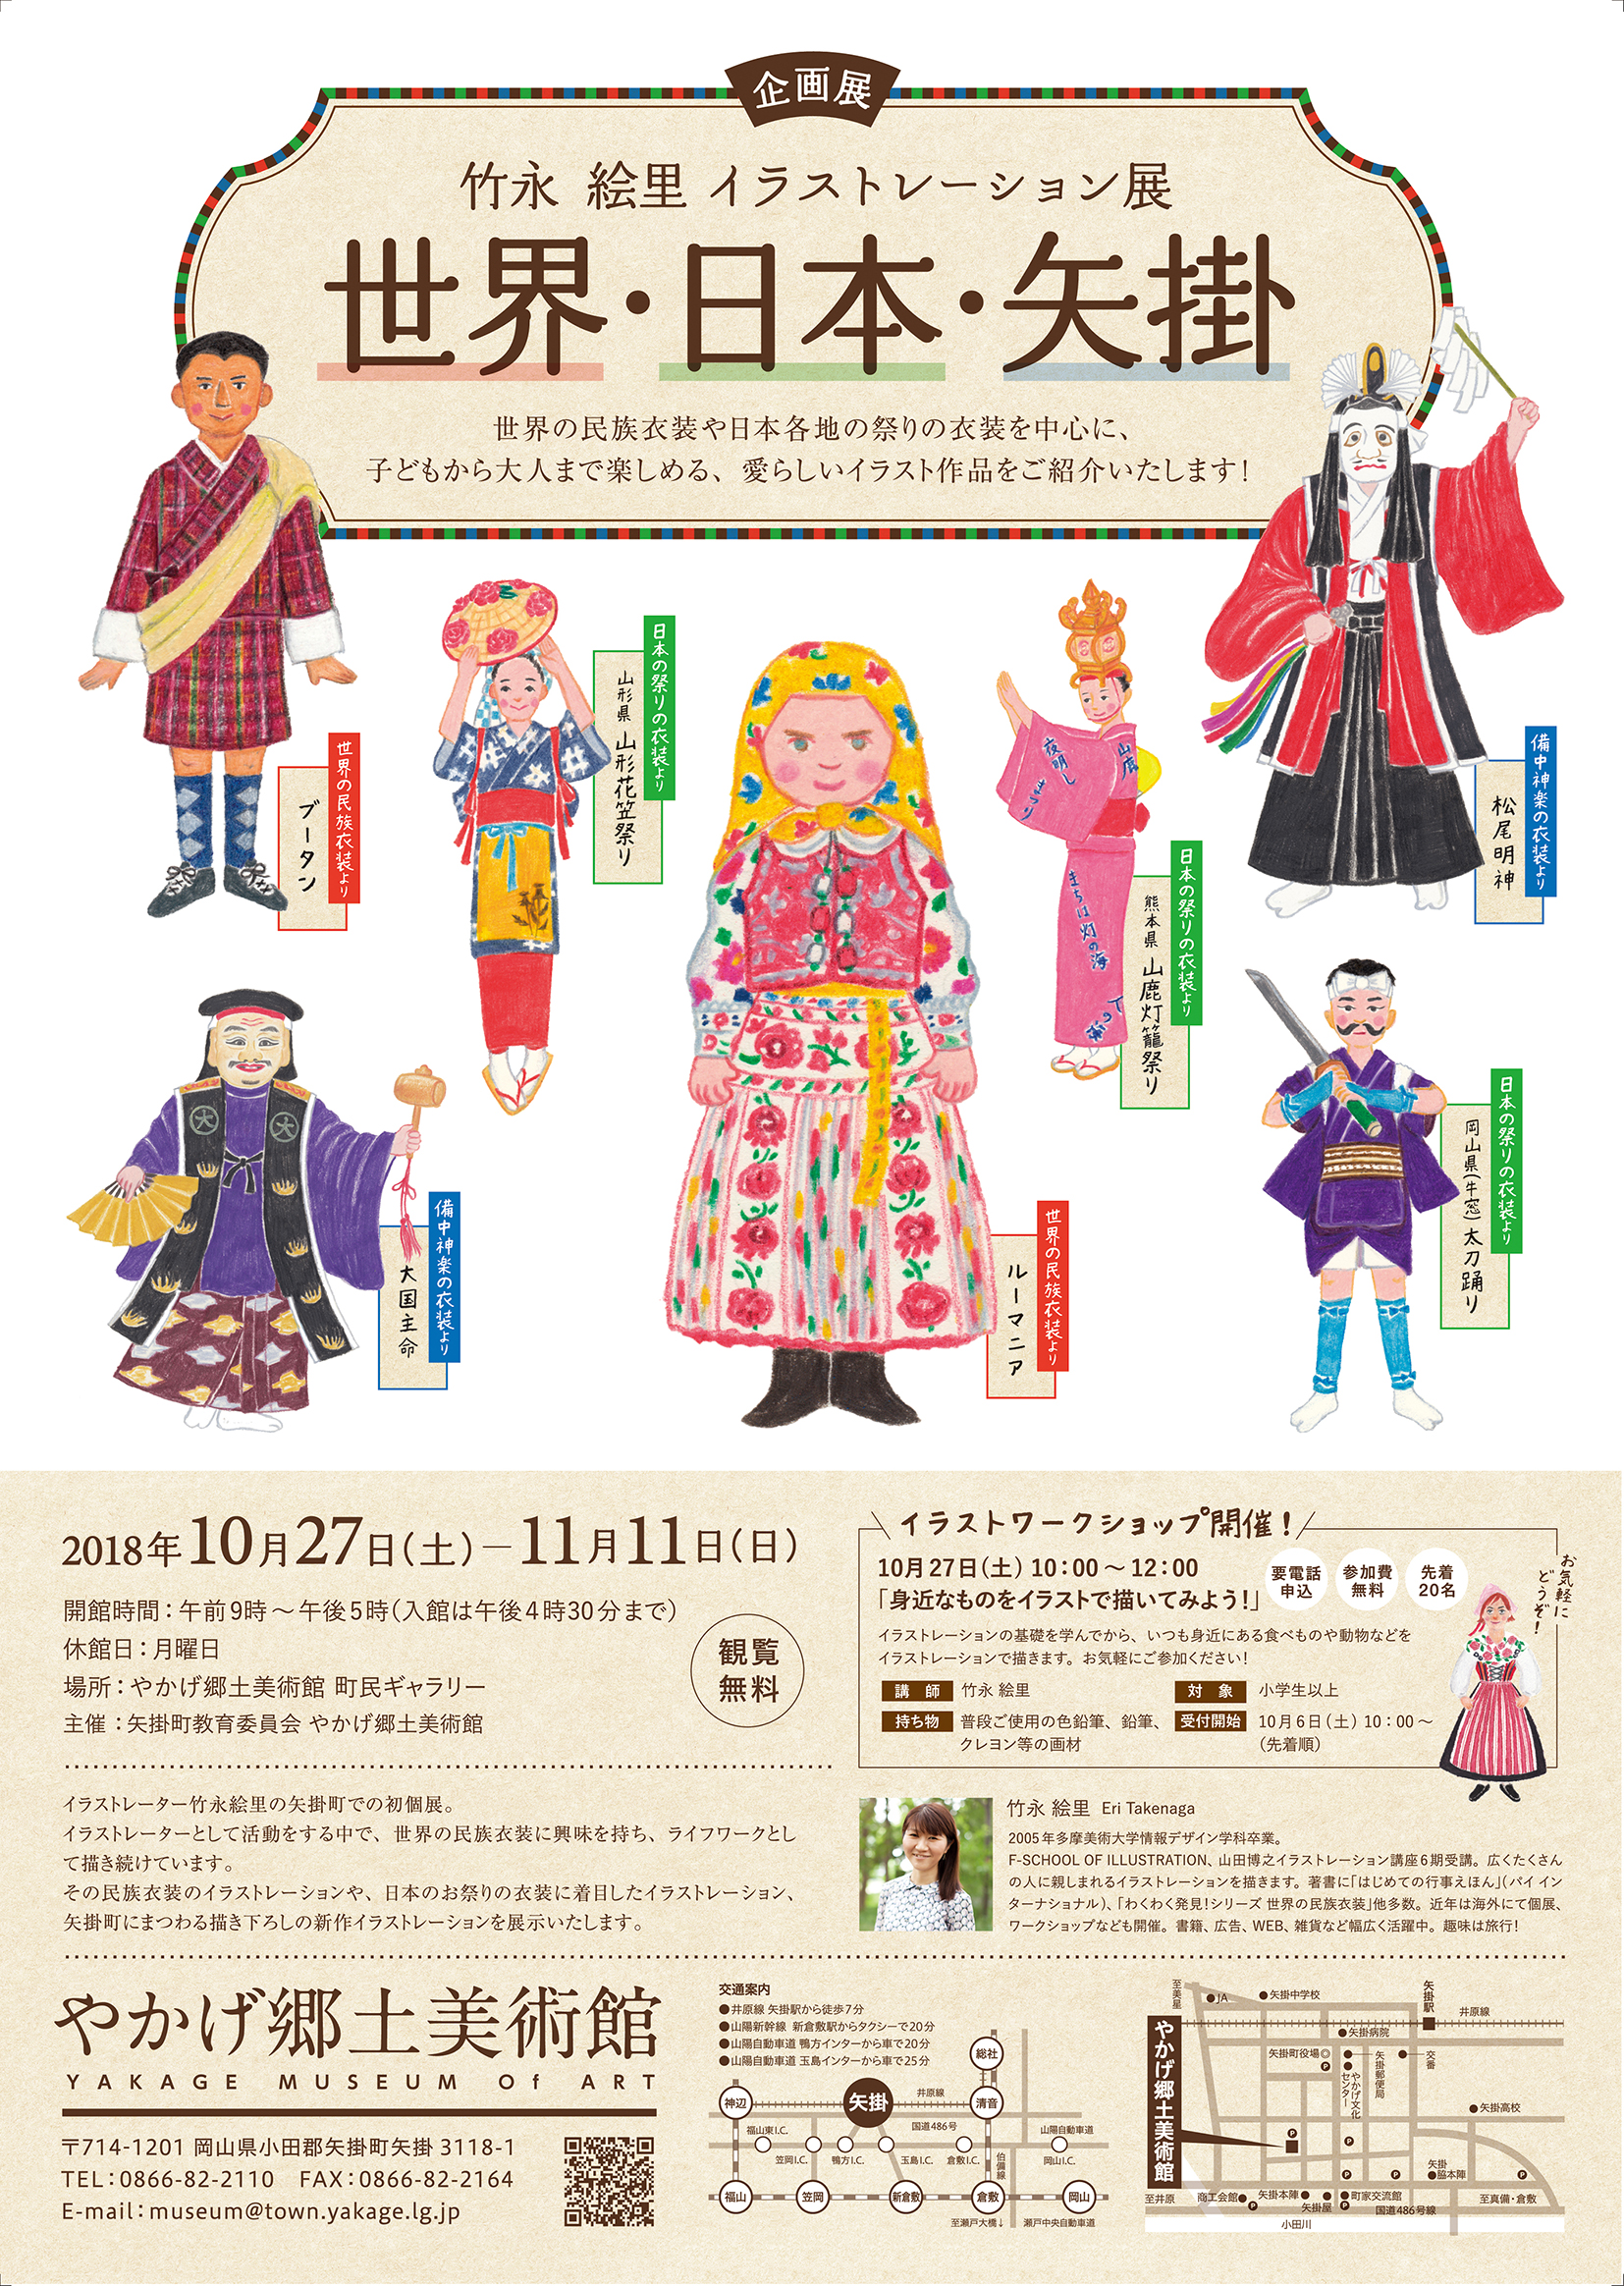 個展 世界の民族衣装 を開催します Illustrator イラストレーター 竹永絵里の Blog